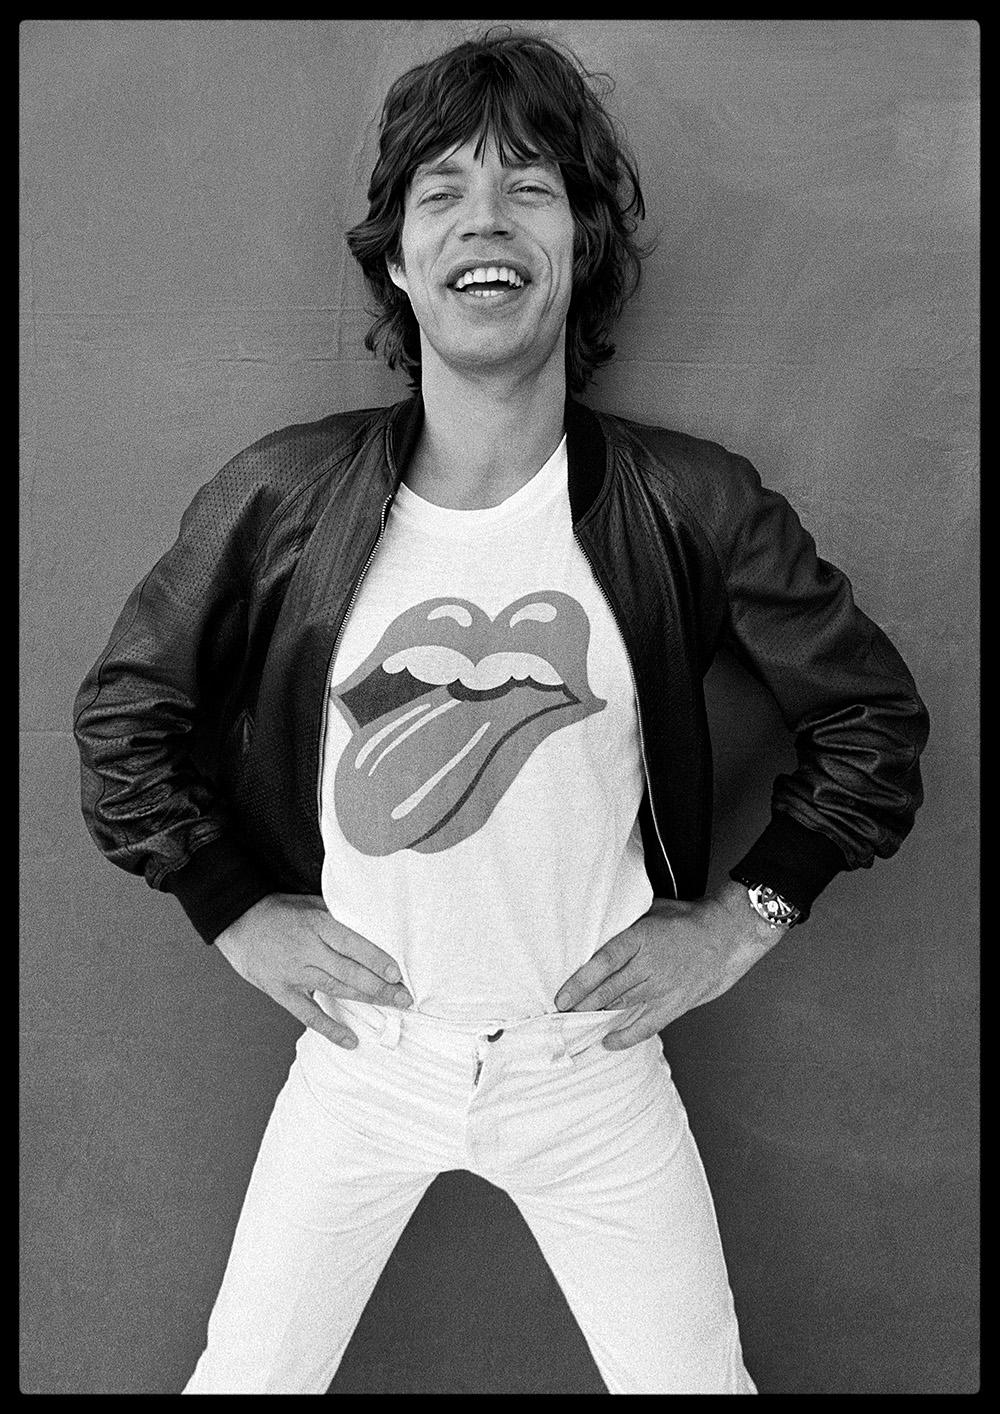 Mick Jagger Vierzig Licks

Von Arthur Steel 

Papierformat: 54 x 44,5" / 137 x 104 cm

Silber-Gelatine-Druck
1970 (später gedruckt)
ungerahmt
handsigniert
limitierte Auflage von nur 10 Stück in dieser Größe 

Hinweis: Andere Druckgrößen und